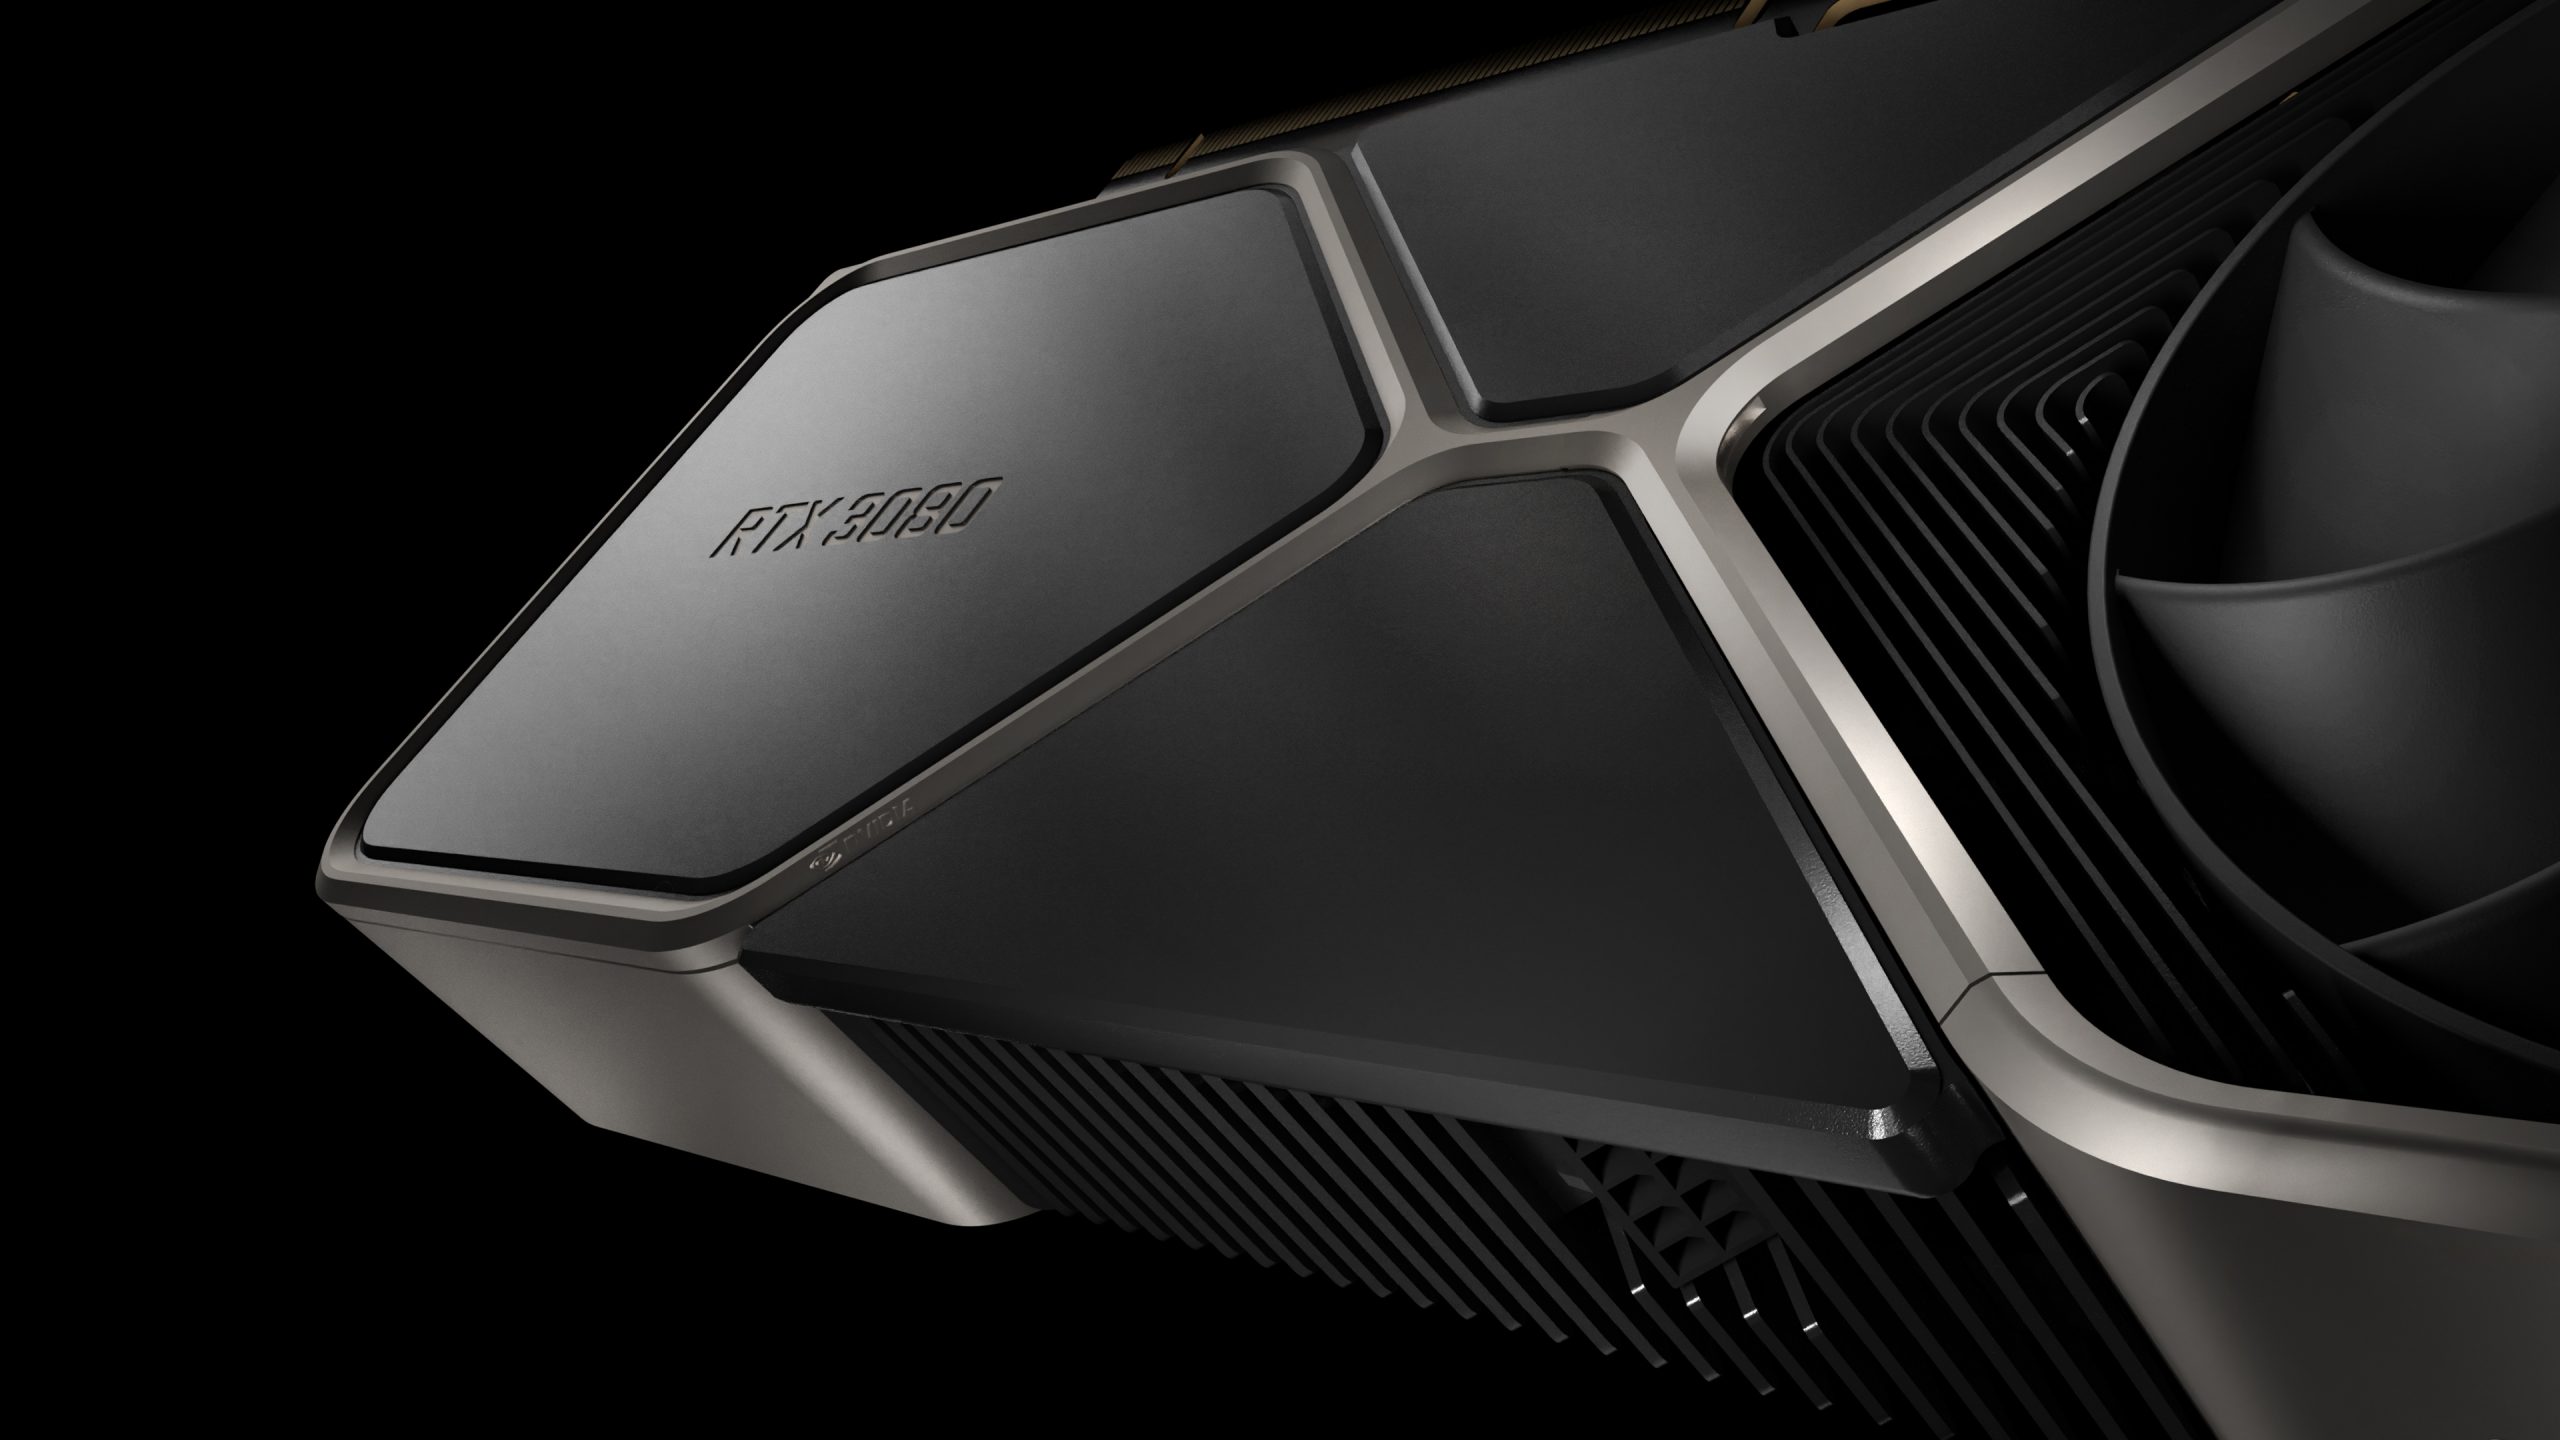 La Geforce Rtx 3080 de 12 GB mejorada de Nvidia podría estar disponible para pedidos por adelantado hoy